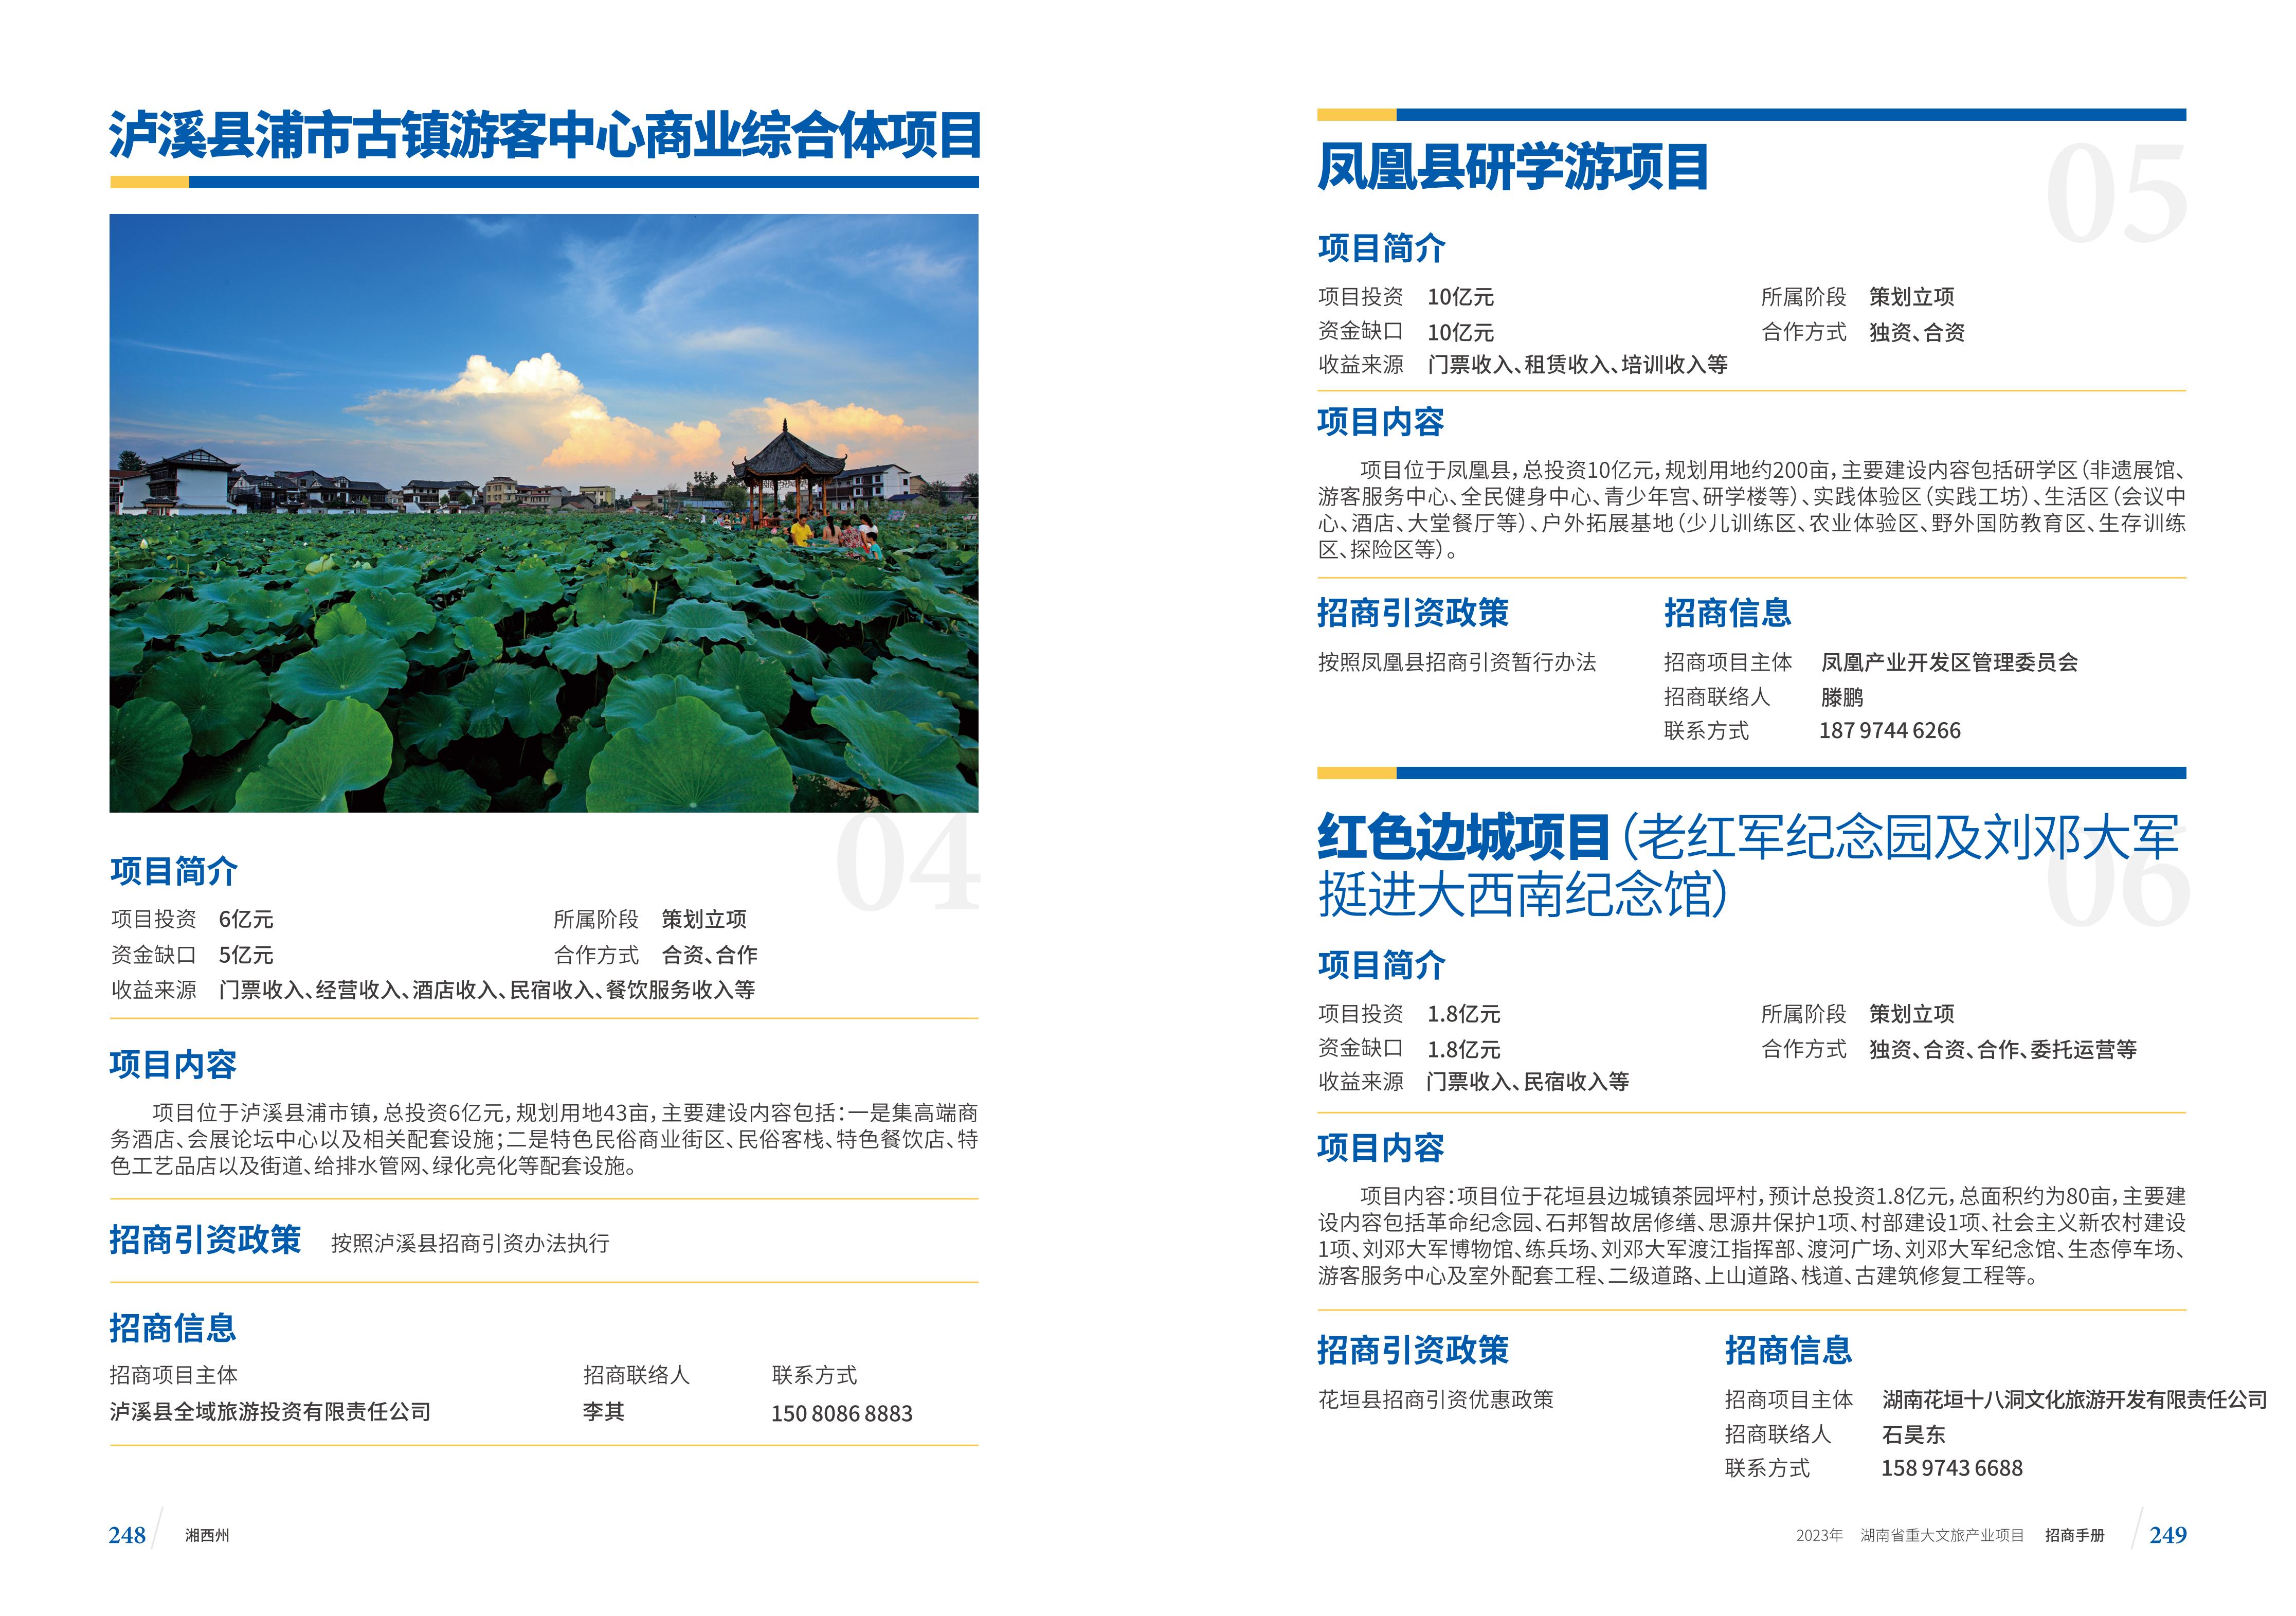 湖南省重大文旅产业项目招手册线上链接版_132.jpg